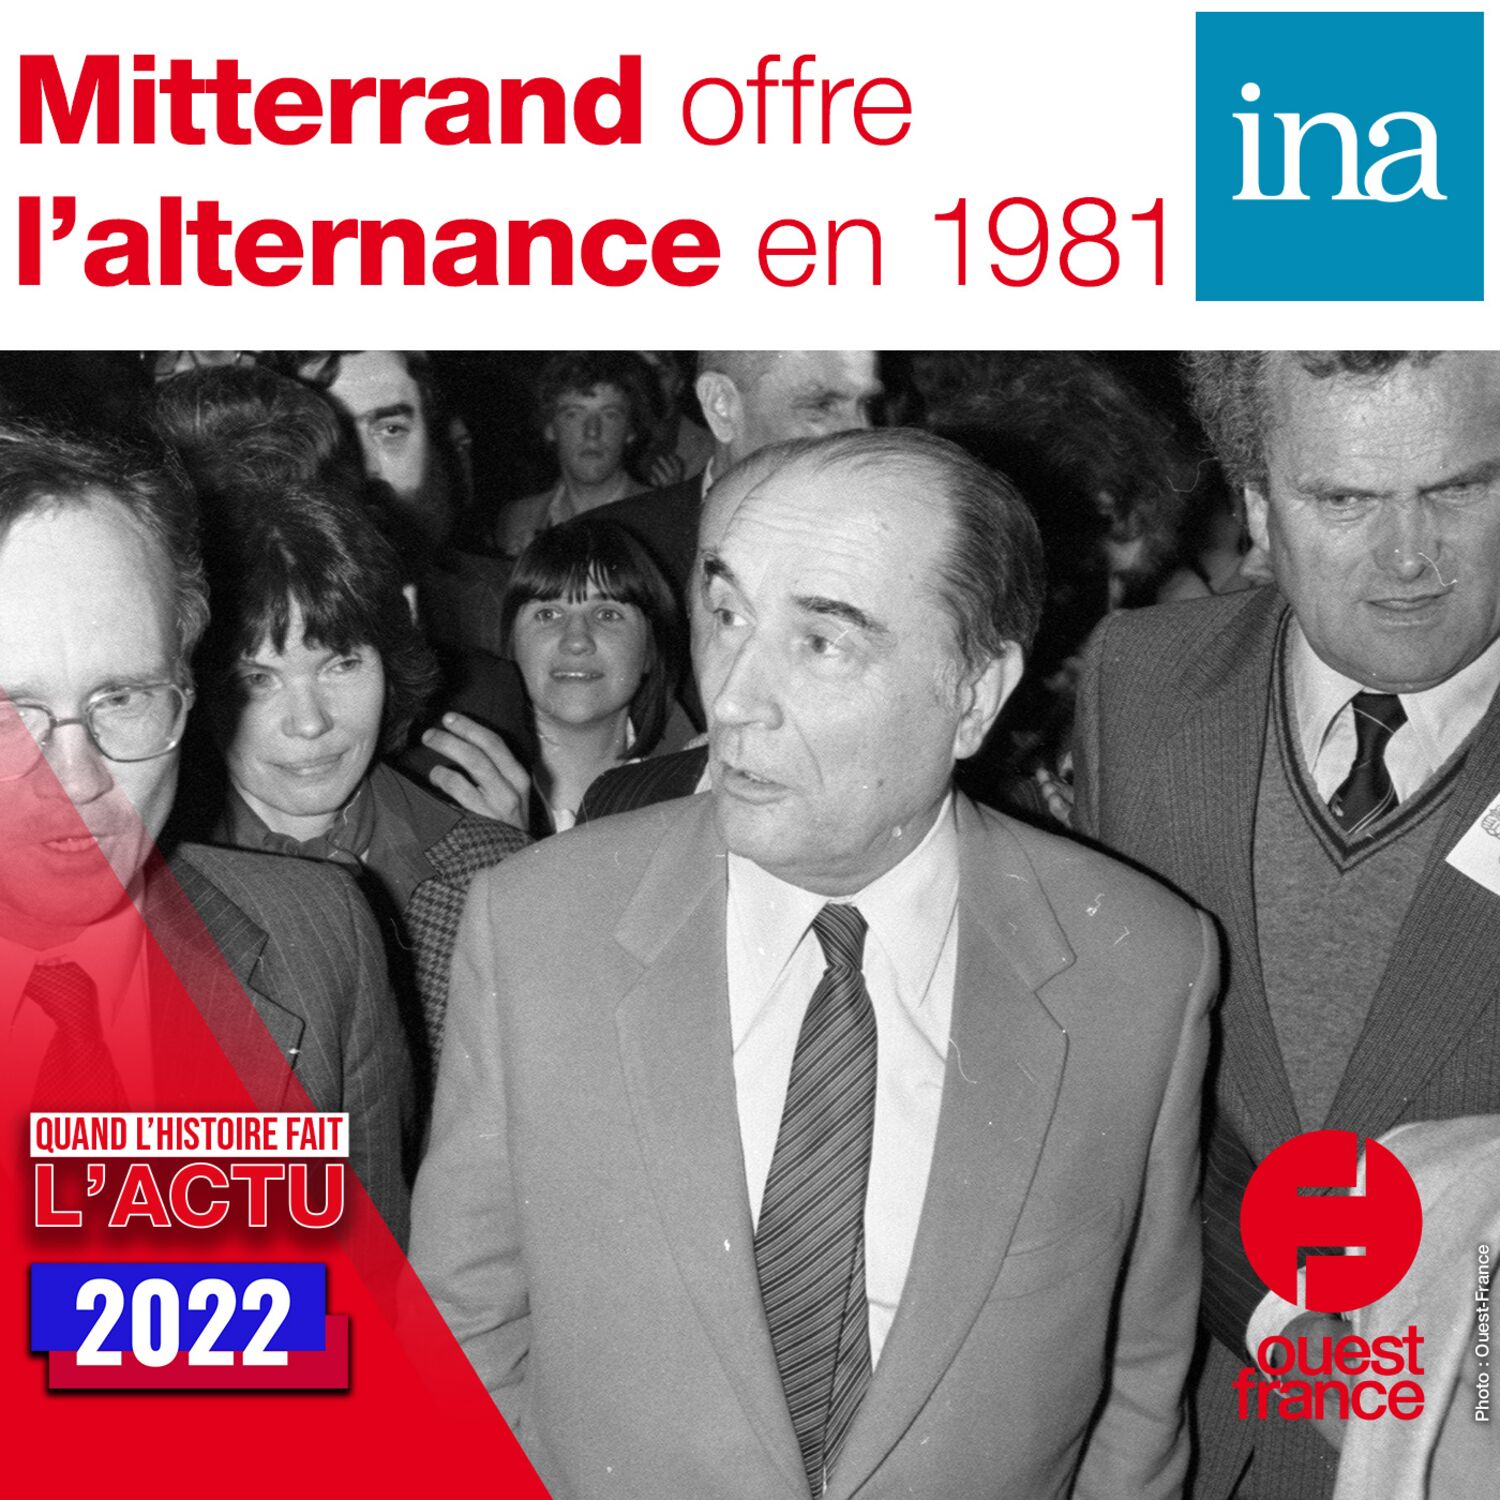 Mitterrand offre l'alternance en 1981 - Quand l'Histoire fait l'actu